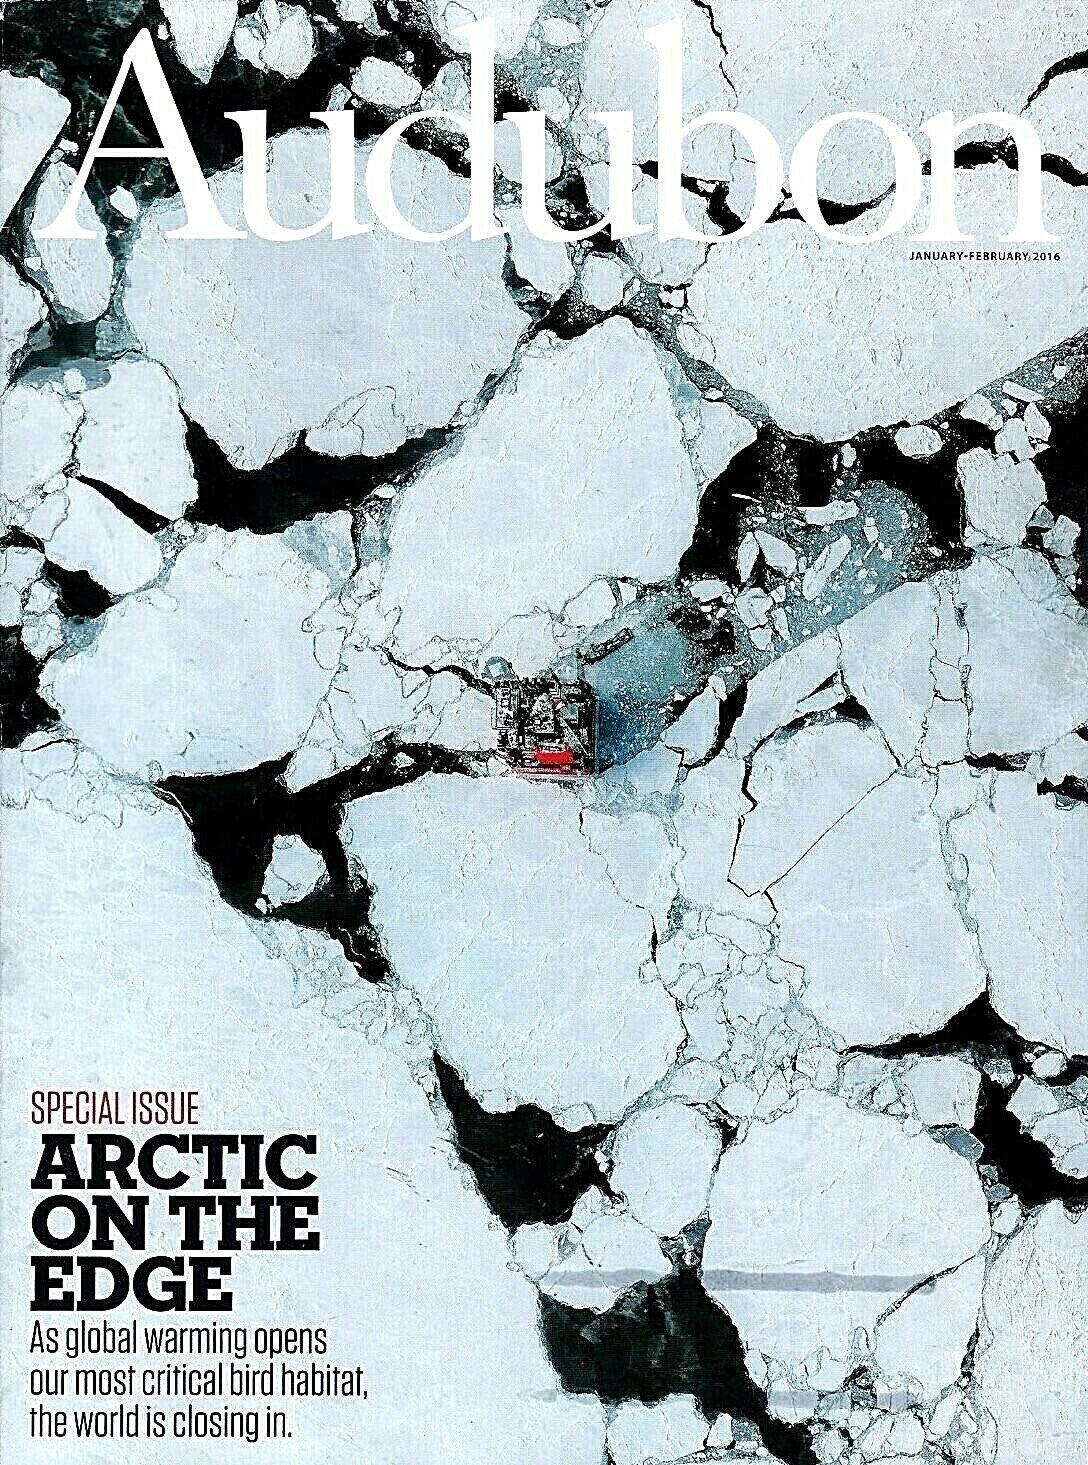 Audubon Magazine January February 2016 Arctic on the Edge Global Warming Birds